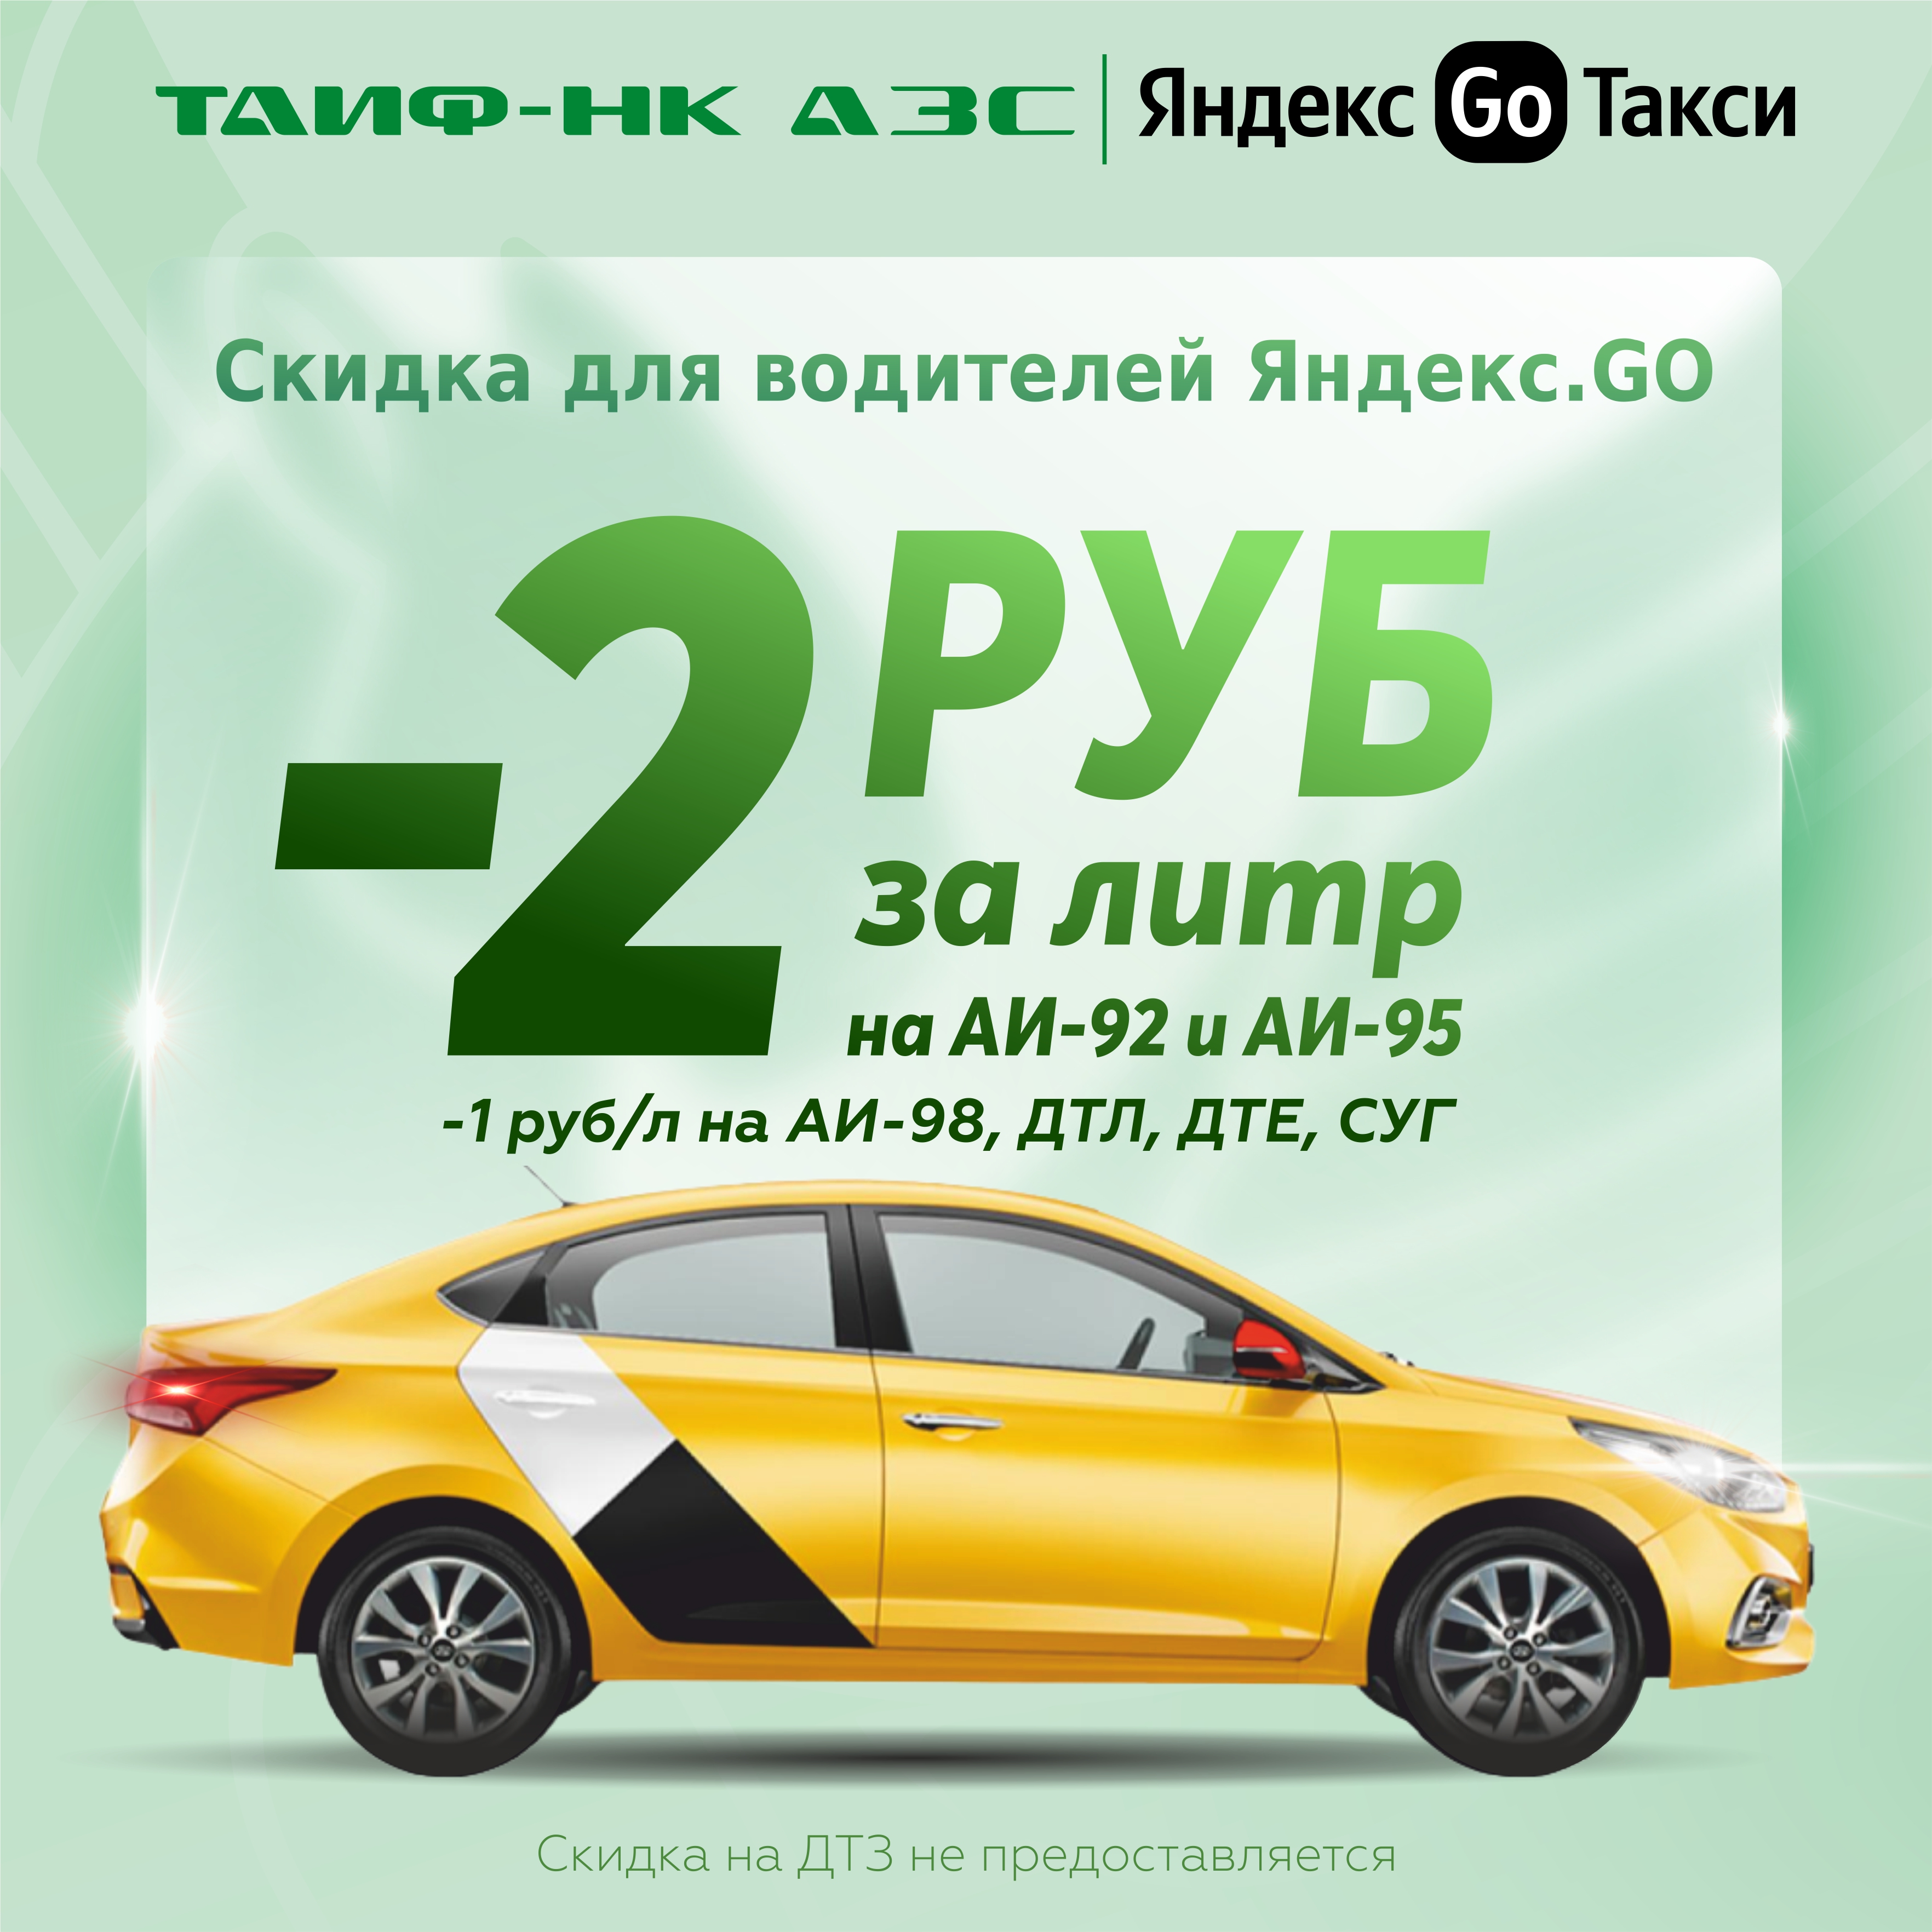 Зимние скидки для водителей "Яндекс.GO"!